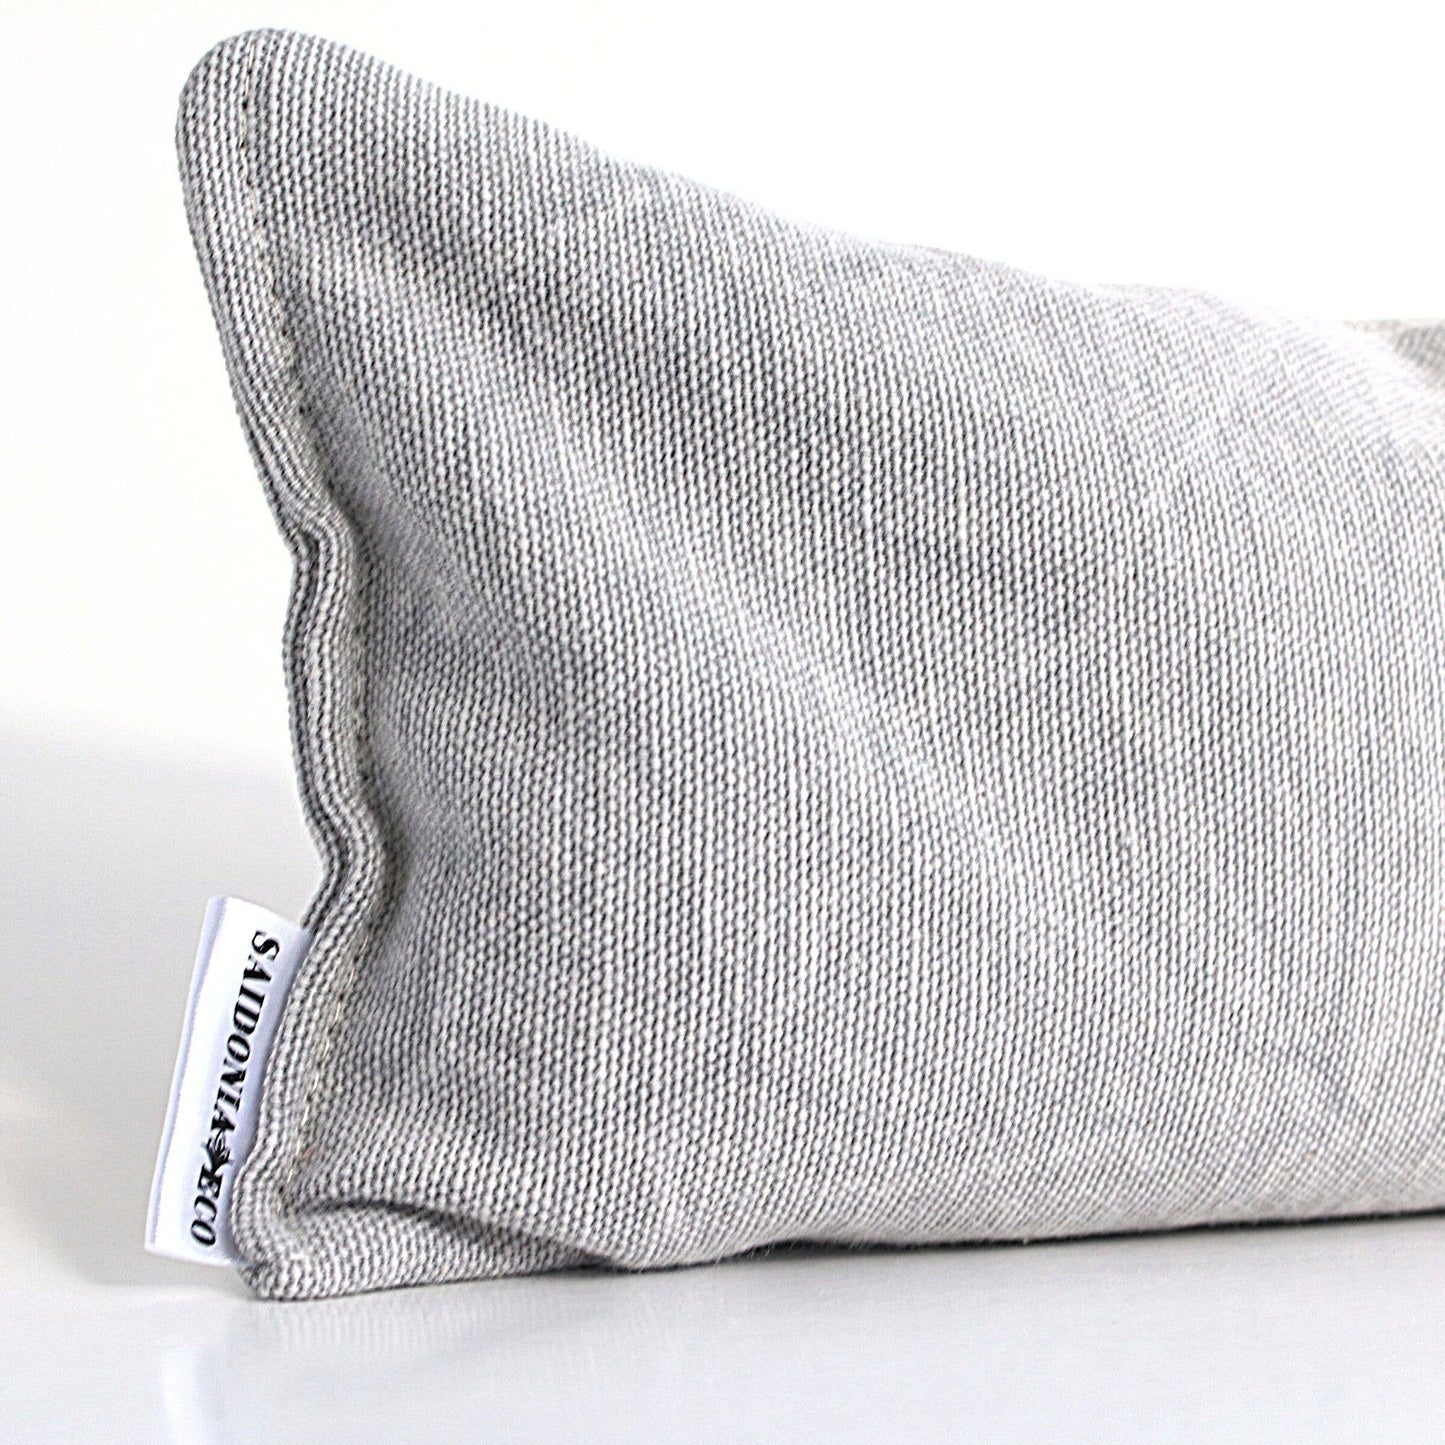 Soothing Lavender Eye Pillow - Gray Stonewash